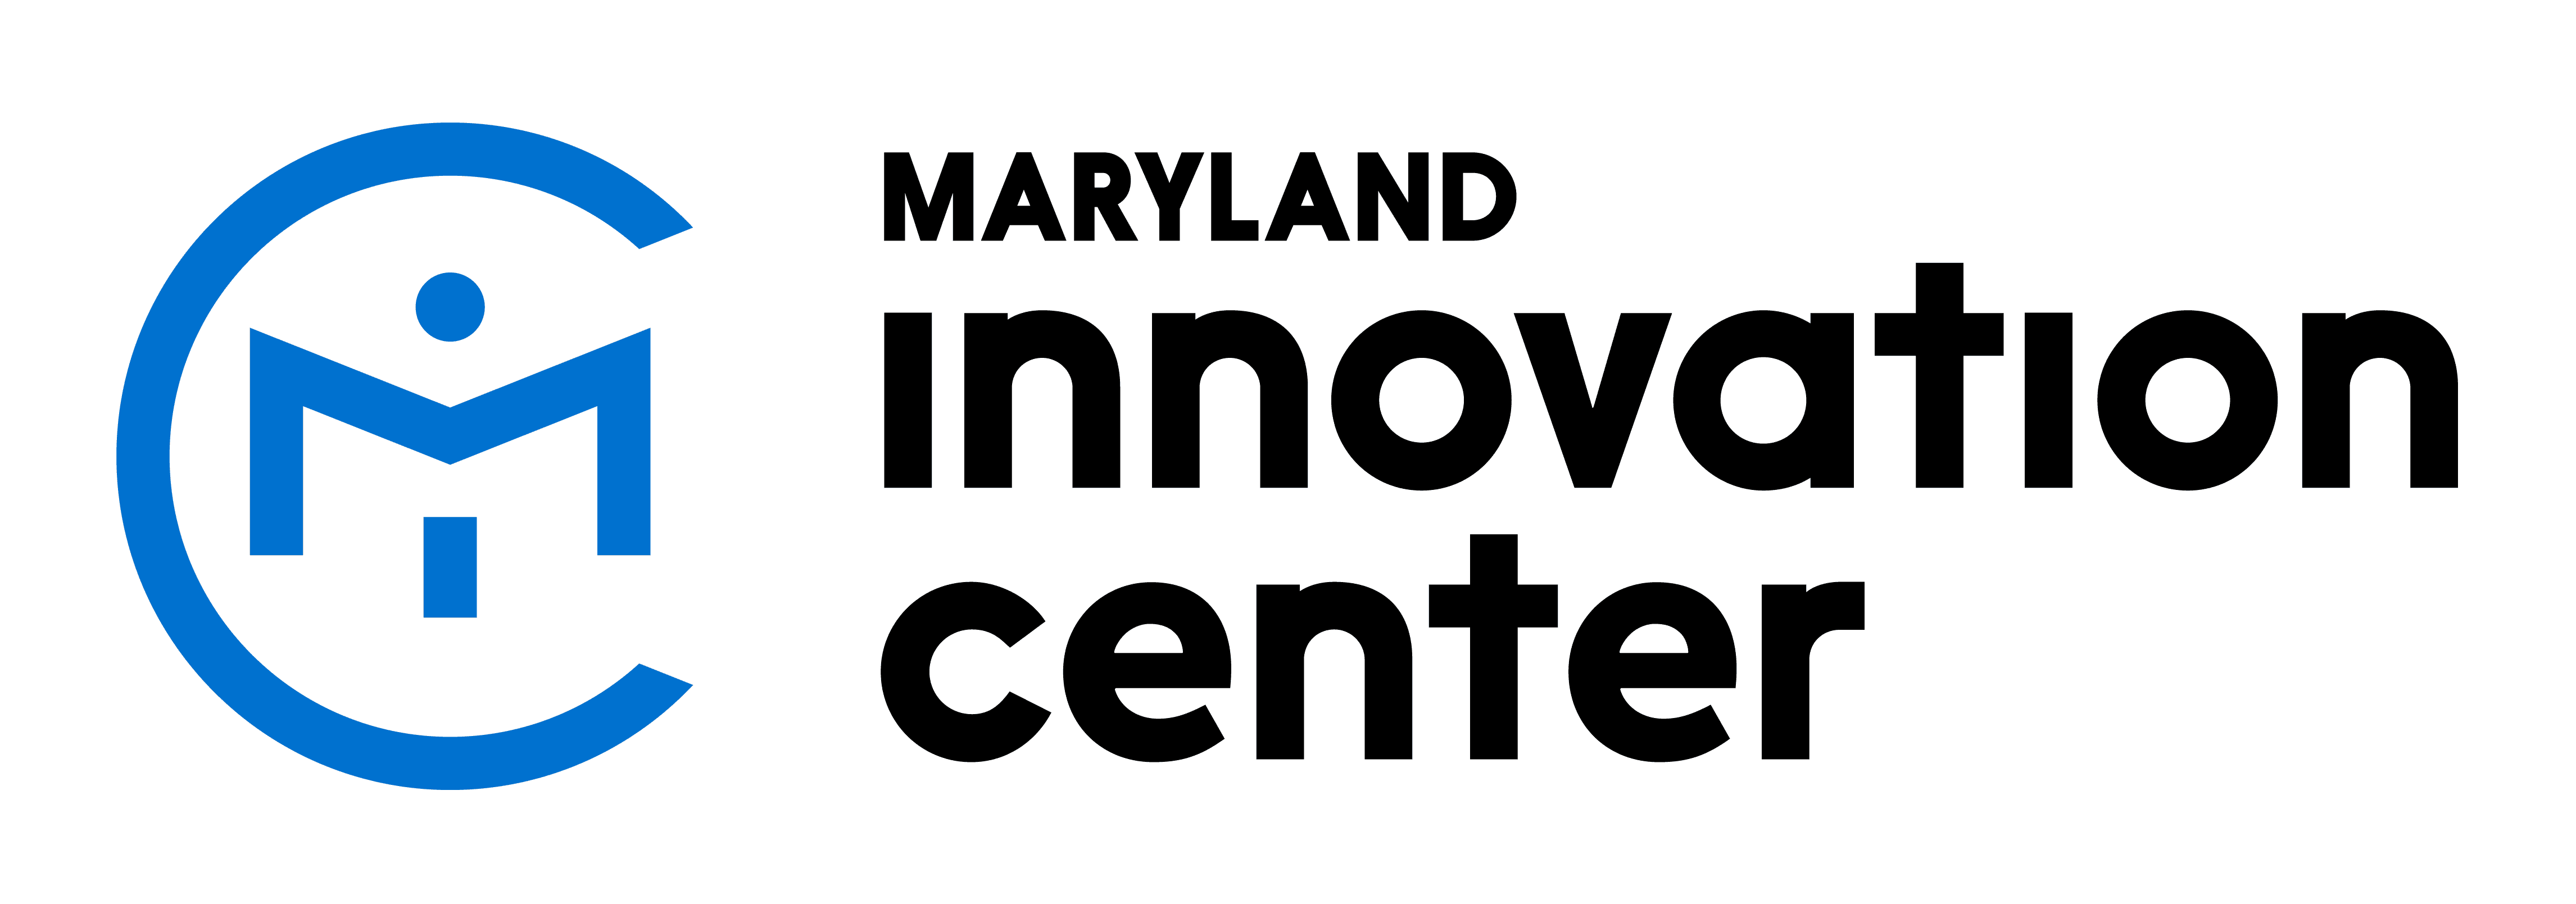 Maryland Innovation Center logo